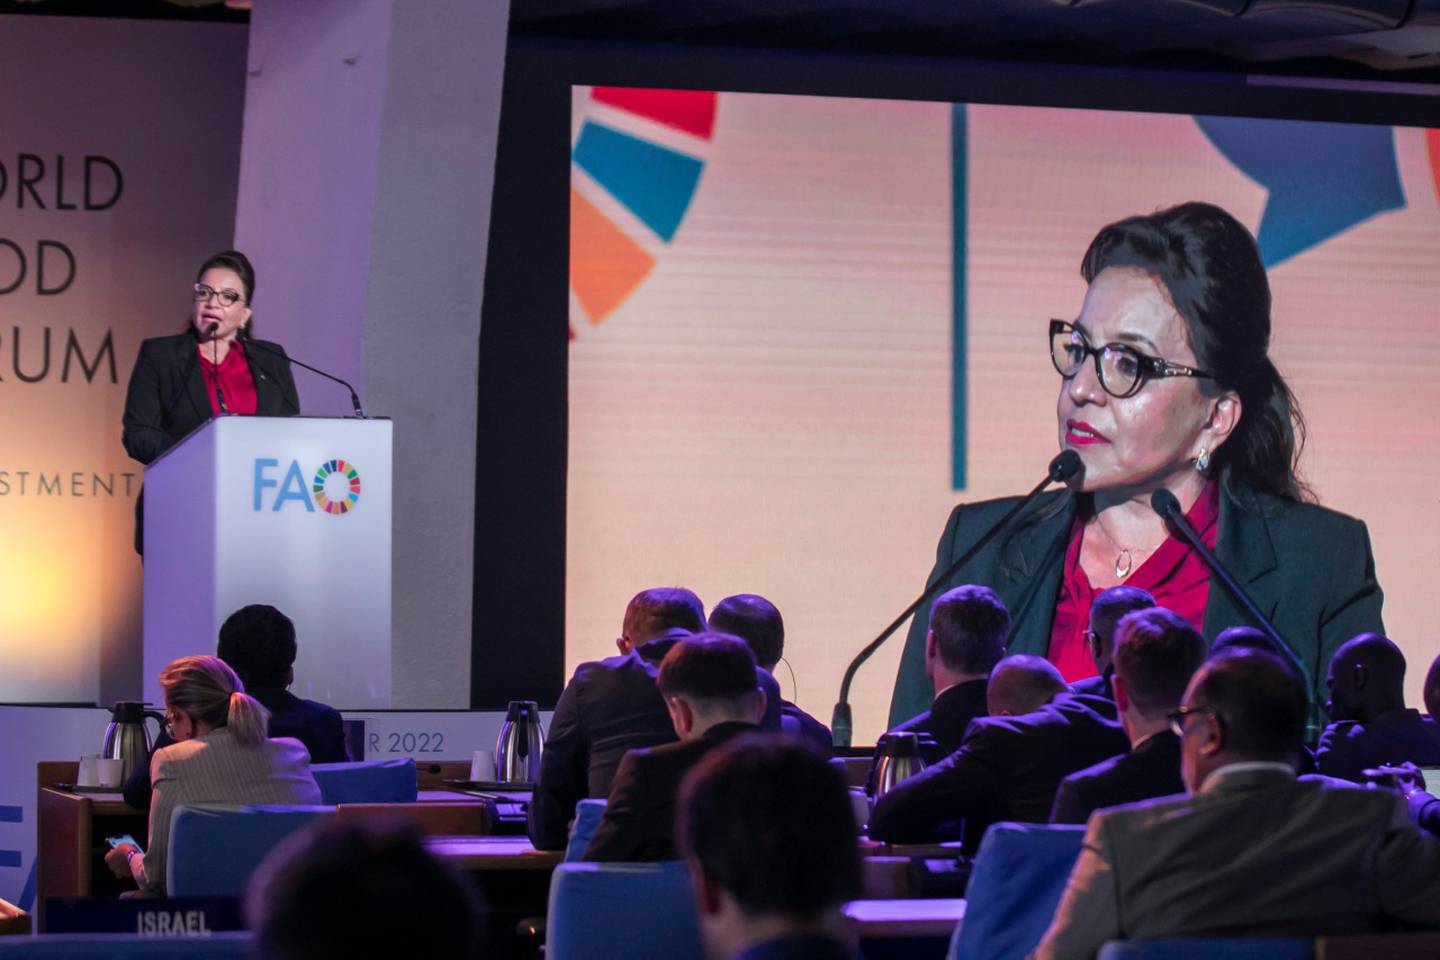 La presidenta Xiomara Castro participó como una de las oradoras en el evento que se desarrollar del 17 al 21 de octubre en la sede la FAO.dfd